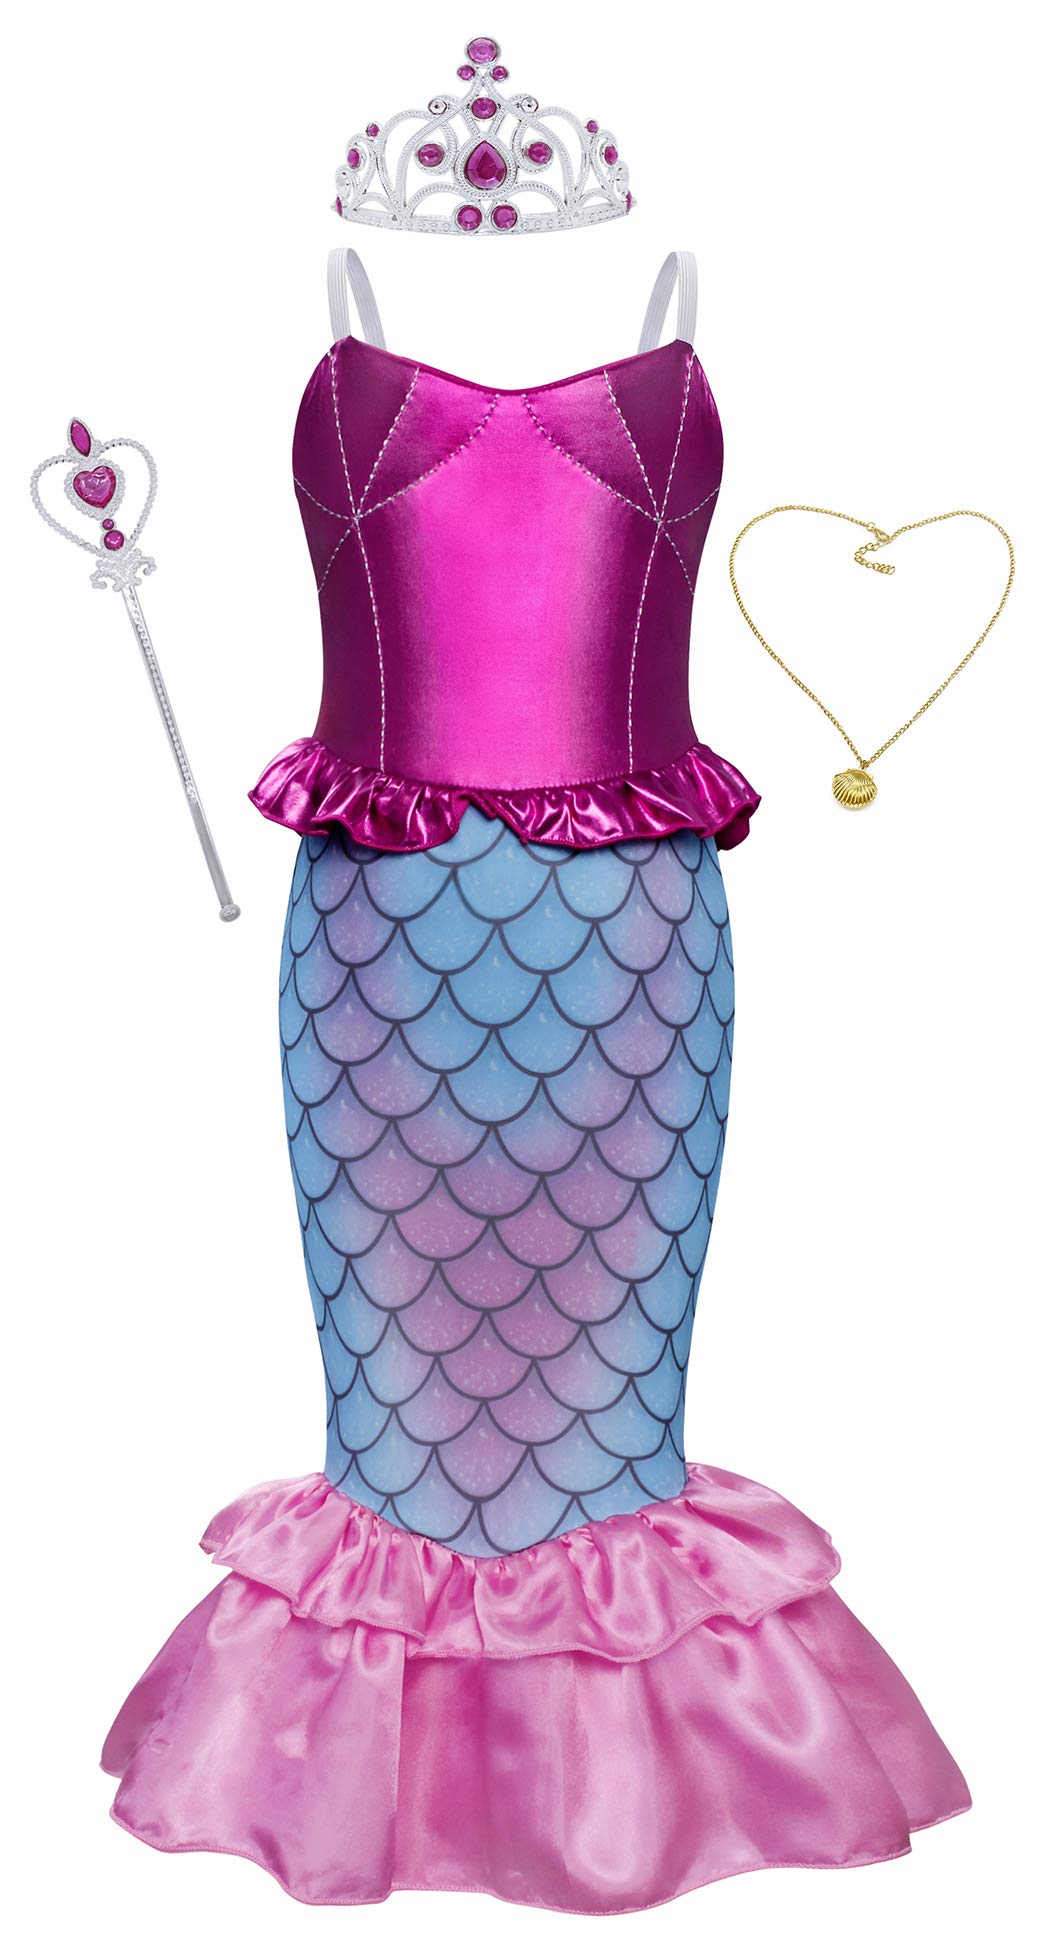 AmzBarley Il Costume della Sirenetta Ariel Vestito vestirsi